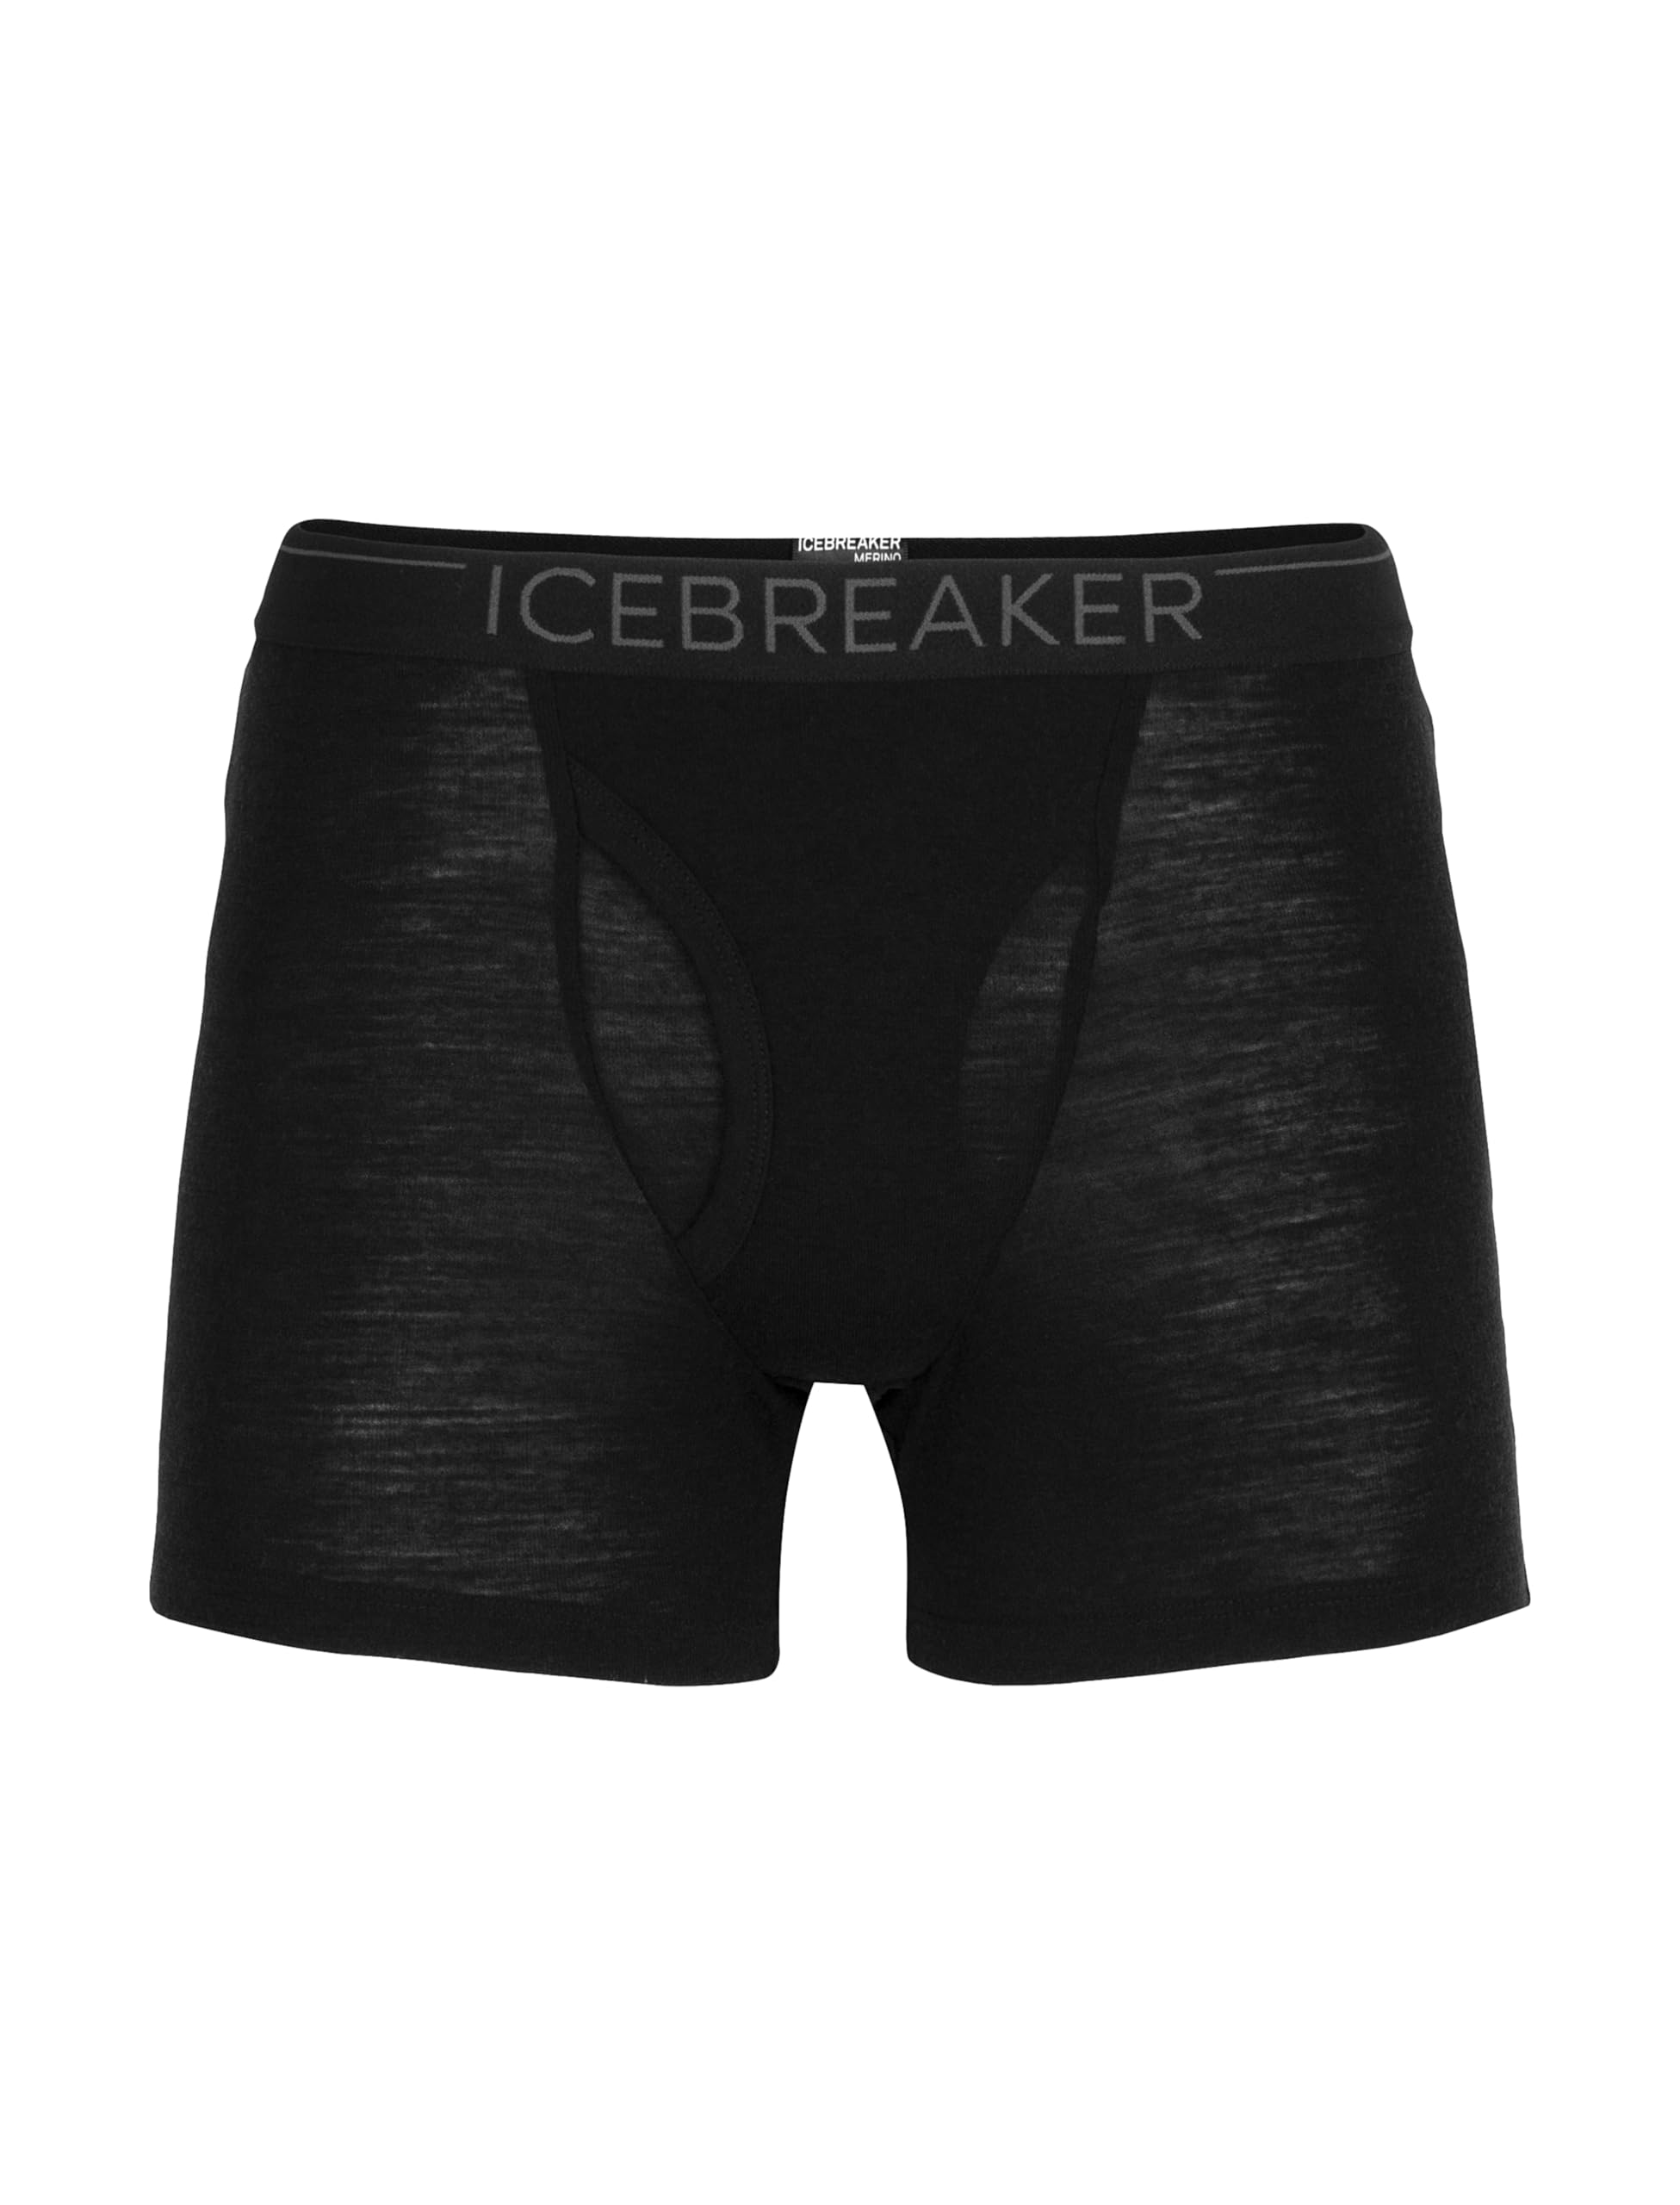 Icebreaker 100% Merinowolle Herren Base Layer - Everyday Boxers mit Eingriff - 175 Ultralight Fabric | Unterhosen Männer | Boxershorts | Unterwäsche | Merino Unterwäsche - Schwarz/Monsoon, XXL